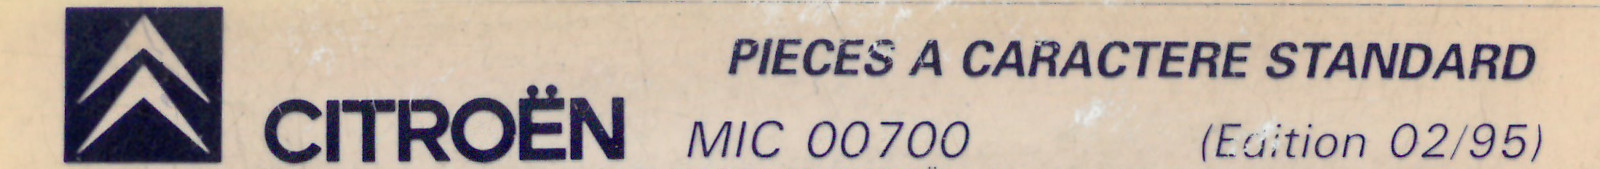 MIC00700 Catalogue pièces à caractère standard Citroën 02/95 02/95